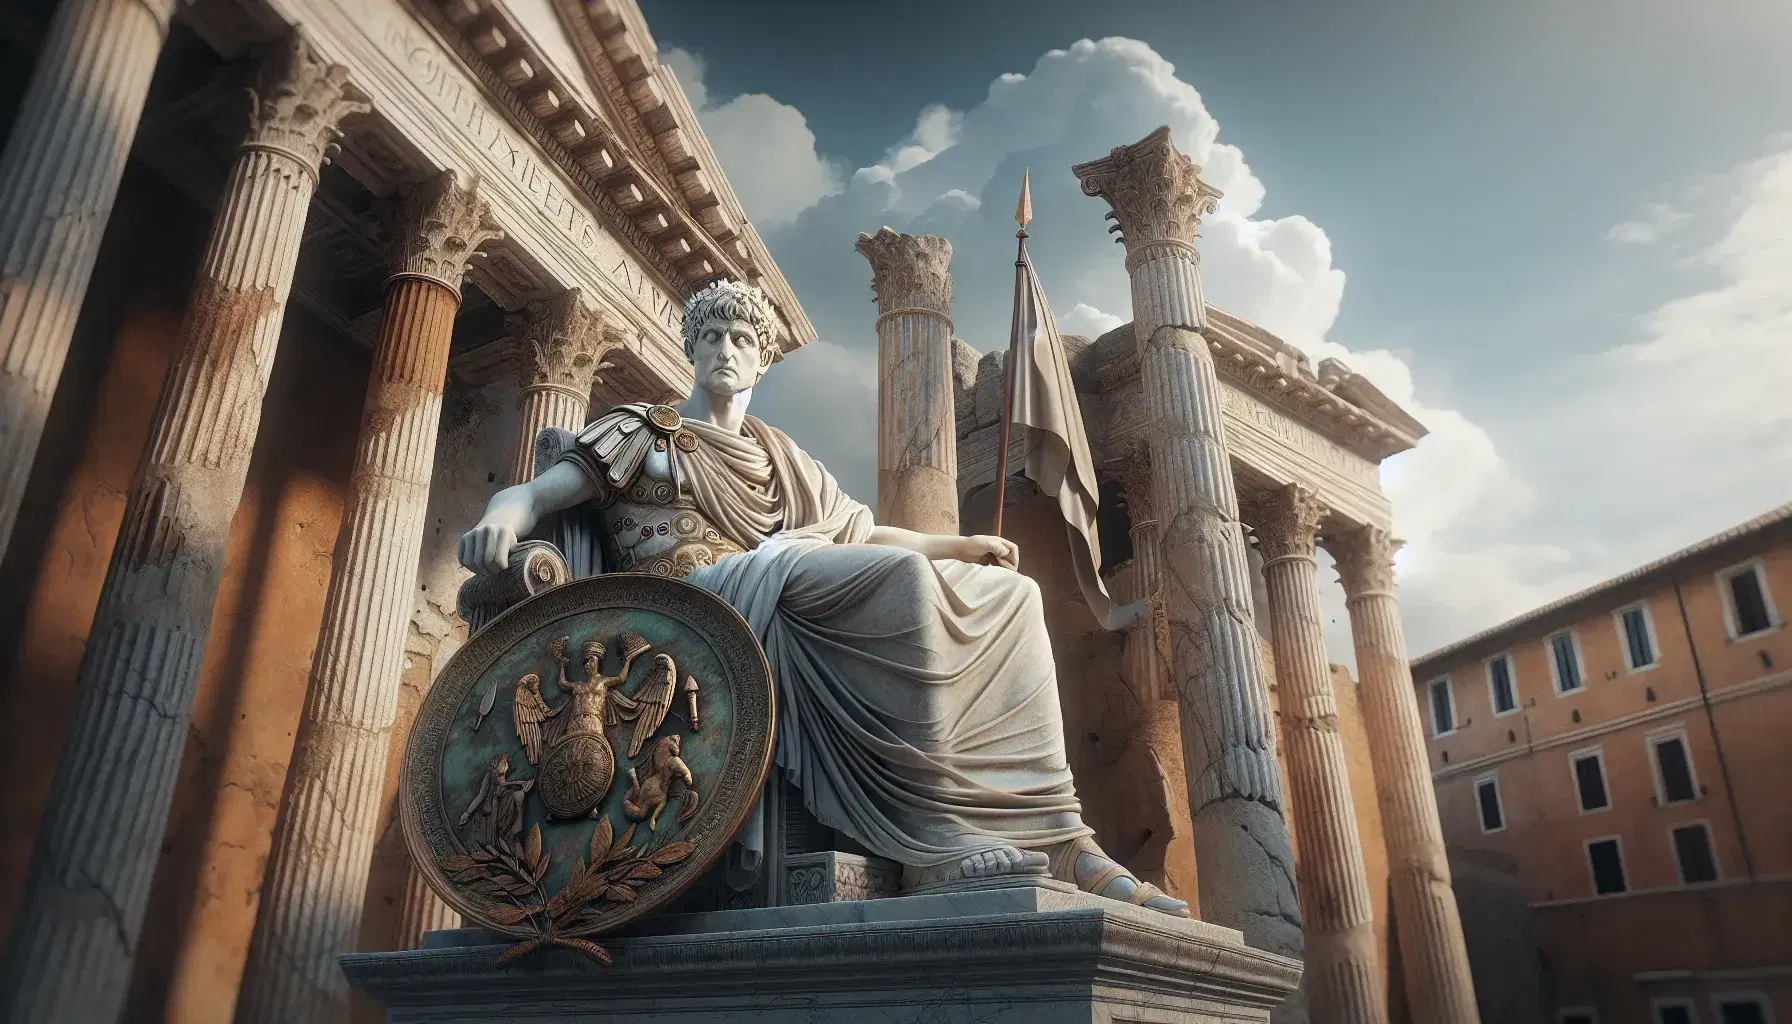 Statua in marmo di dignitario romano con toga e corona di alloro, spada e scudo in bronzo, tempio antico con colonne in sfondo.